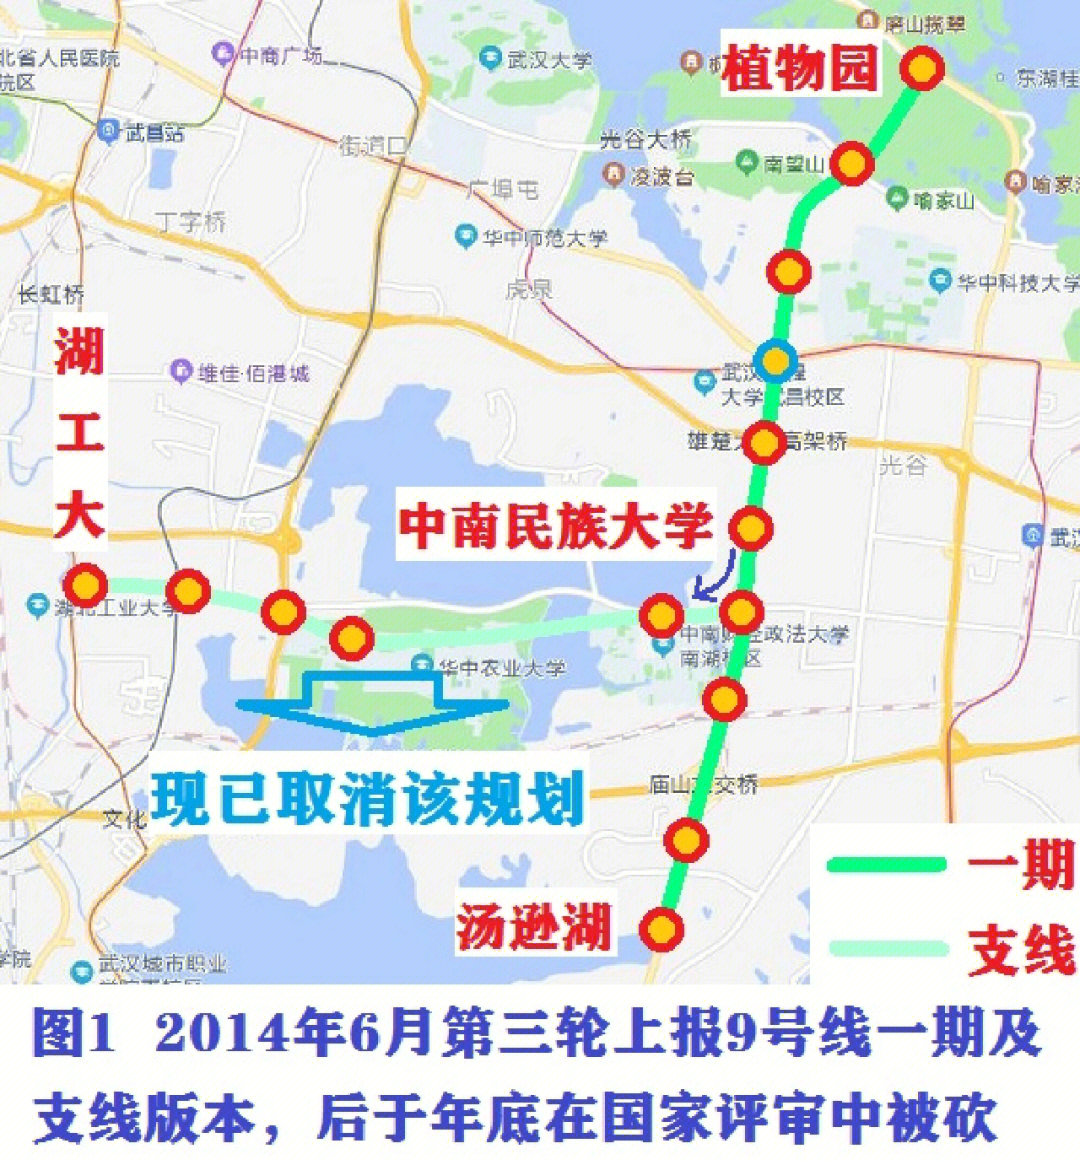 武汉地铁第五轮推测7上报新线分析中